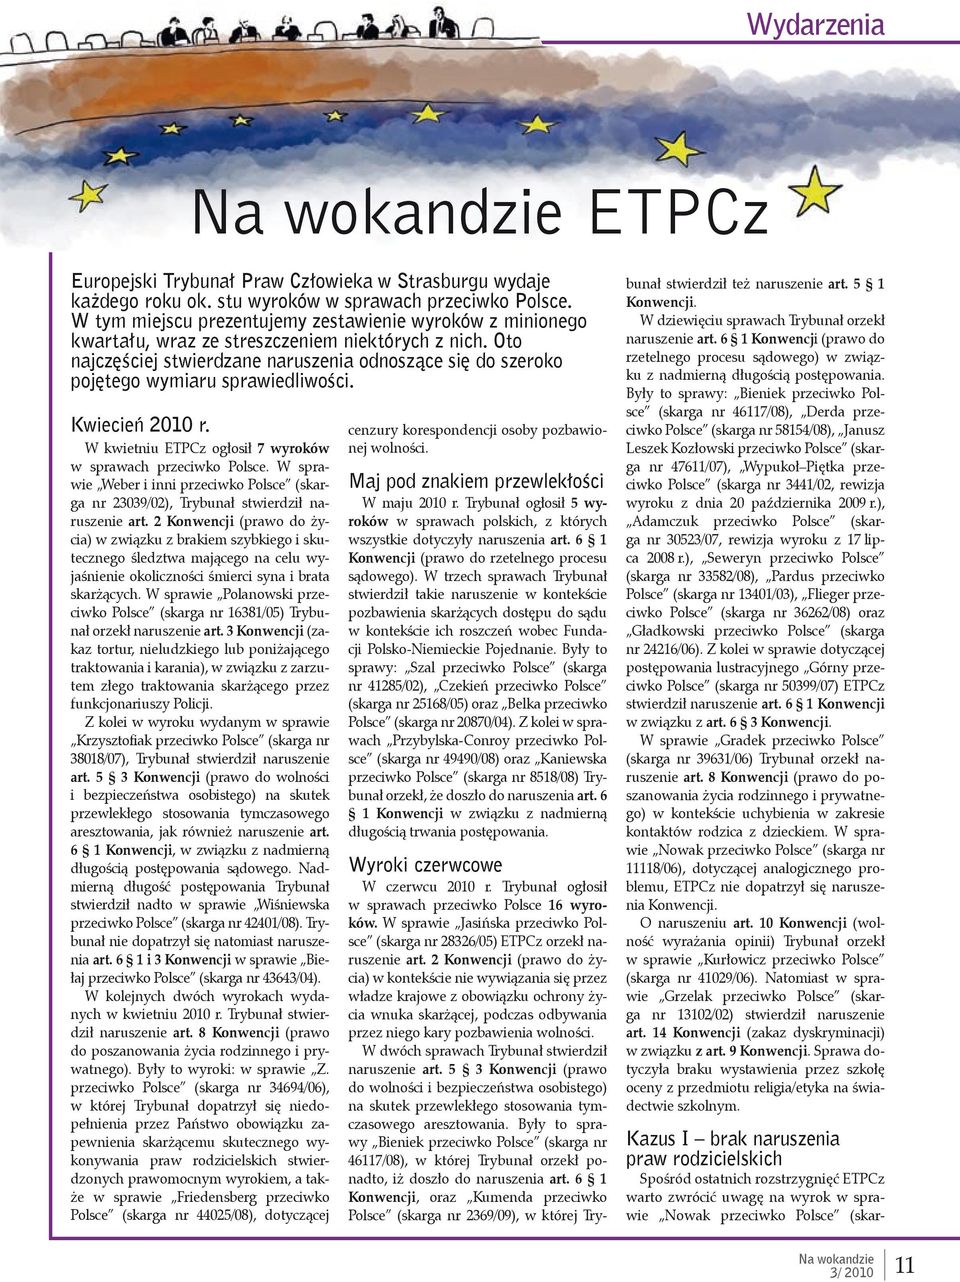 Oto najczęściej stwierdzane naruszenia odnoszące się do szeroko pojętego wymiaru sprawiedliwości. Kwiecień 2010 r. W kwietniu ETPCz ogłosił 7 wyroków w sprawach przeciwko Polsce.